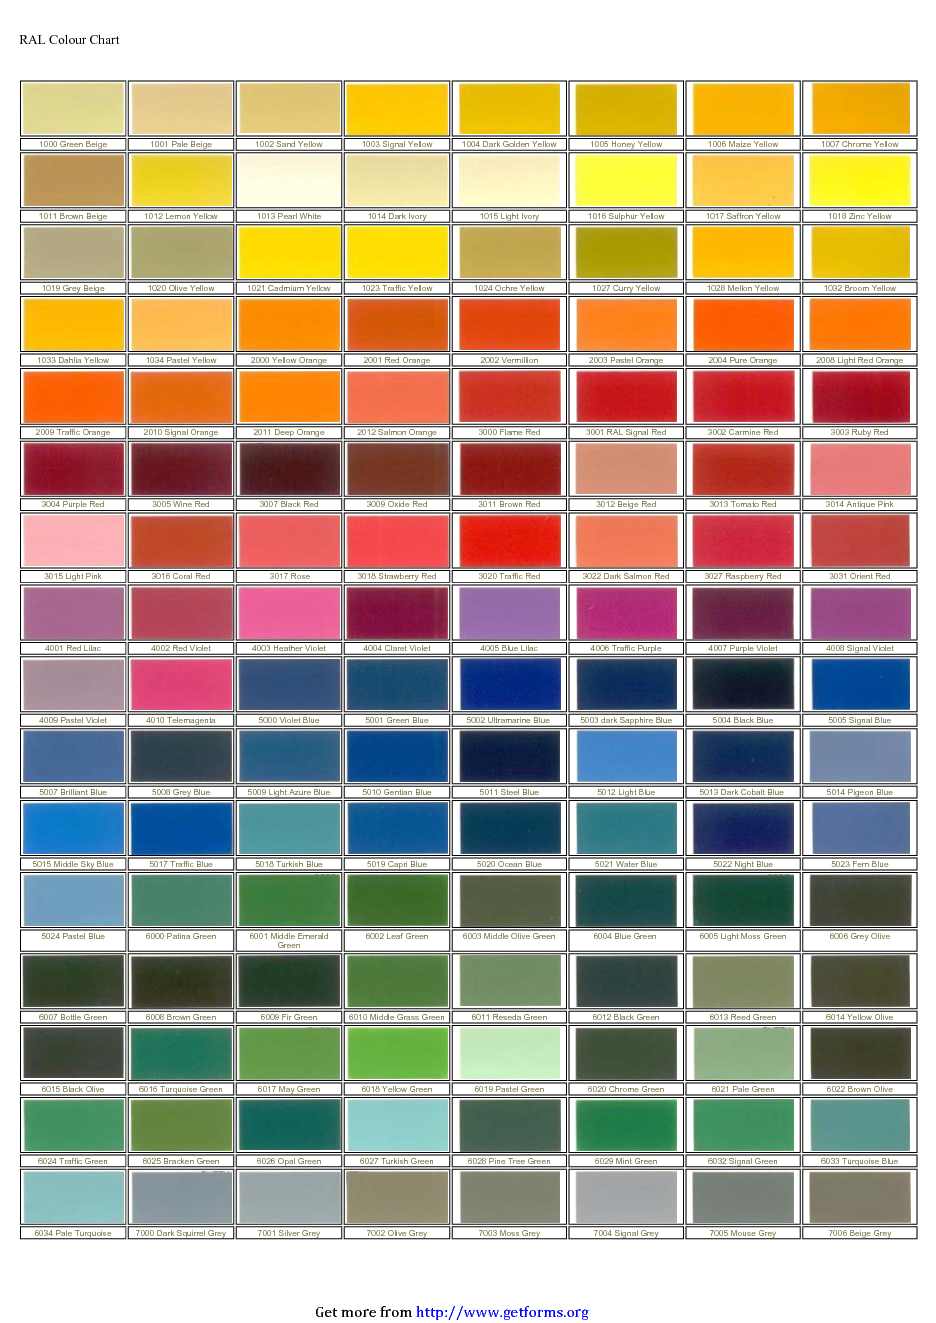 RAL Colour Chart 1